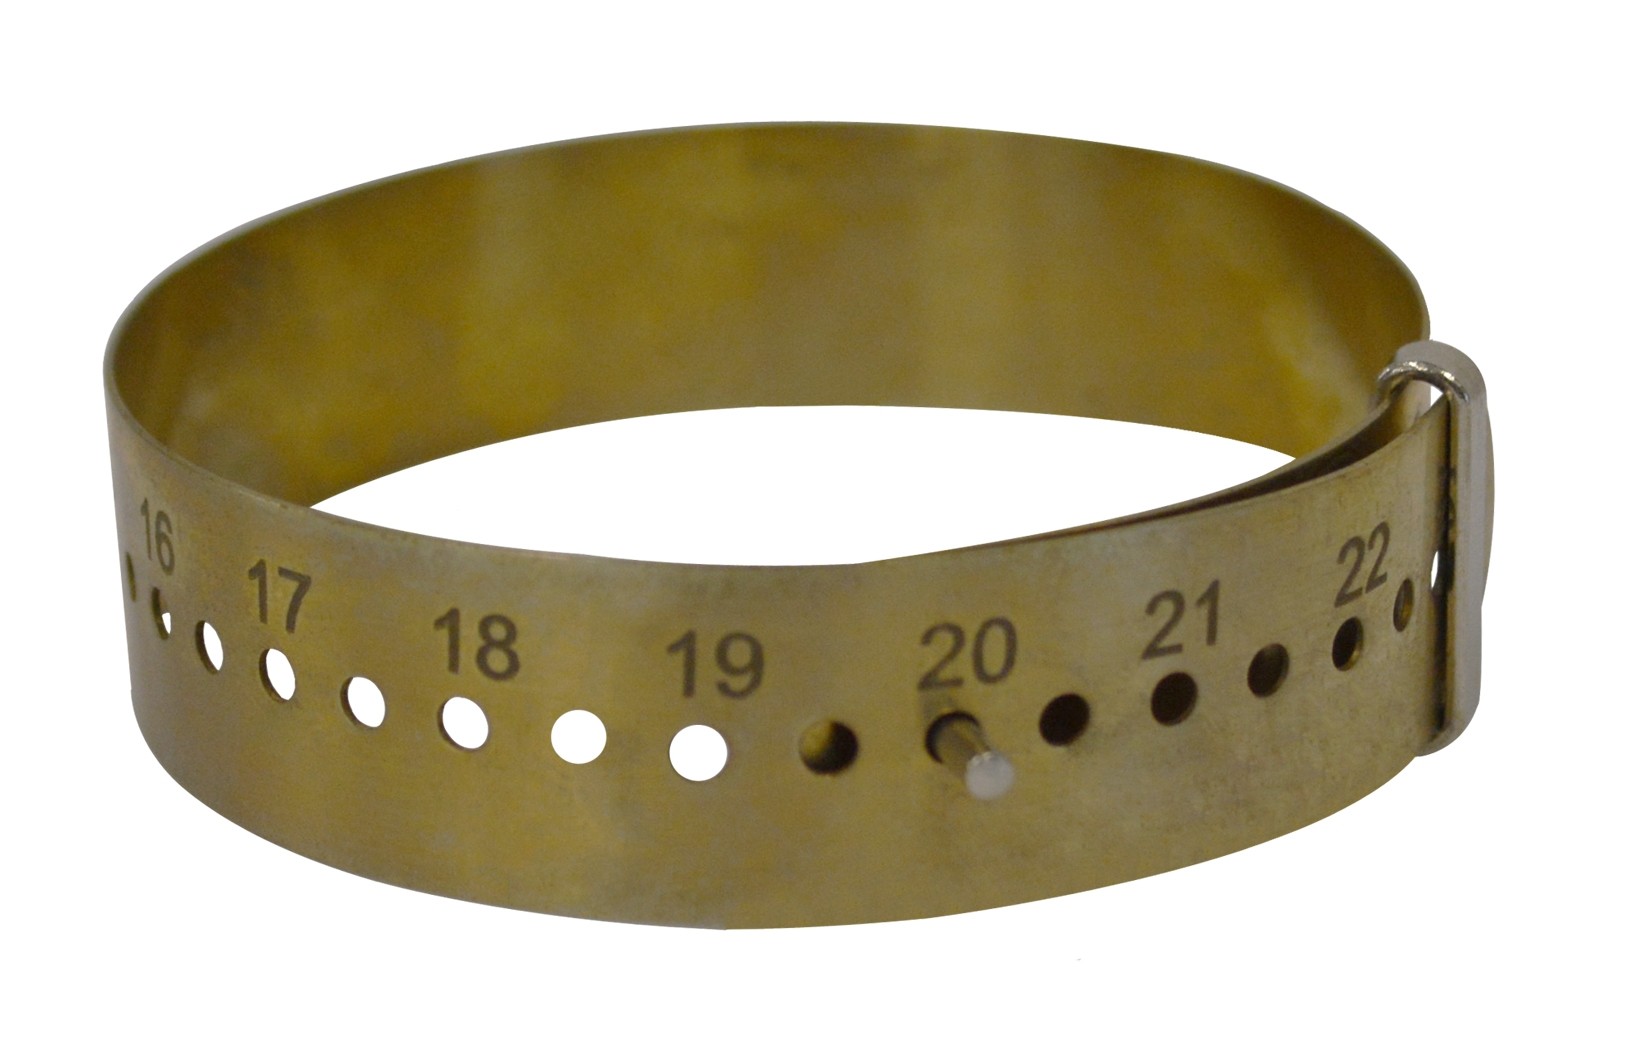 Metal Bracelet Measuring Gauge - Millimeters